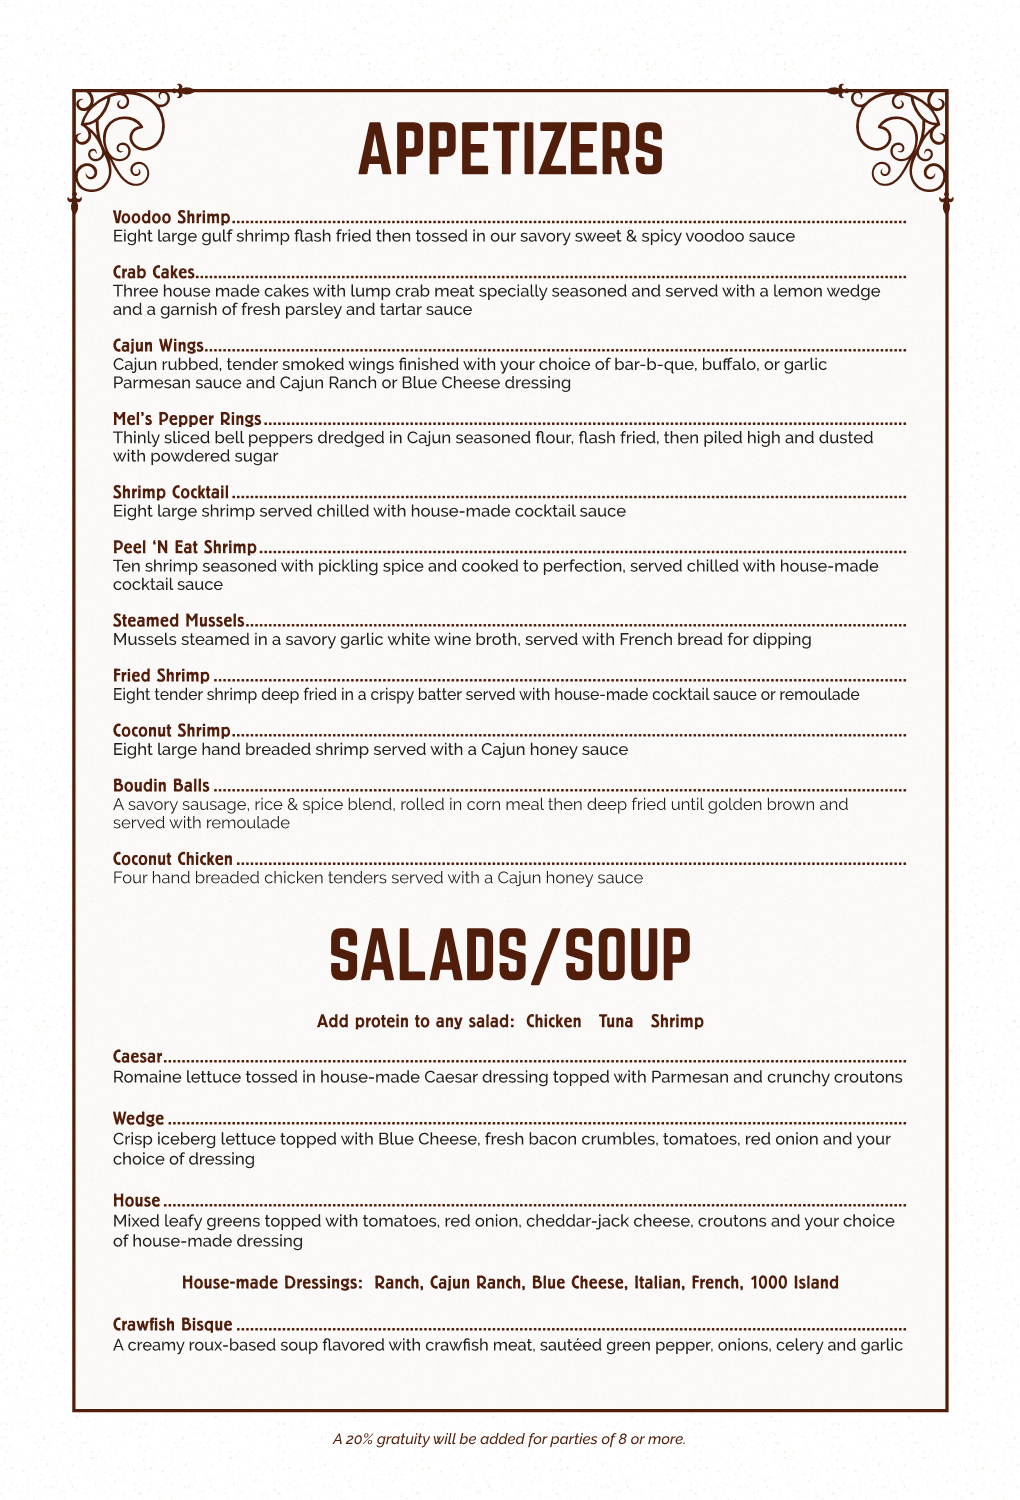 Appetizers Salads/Soup